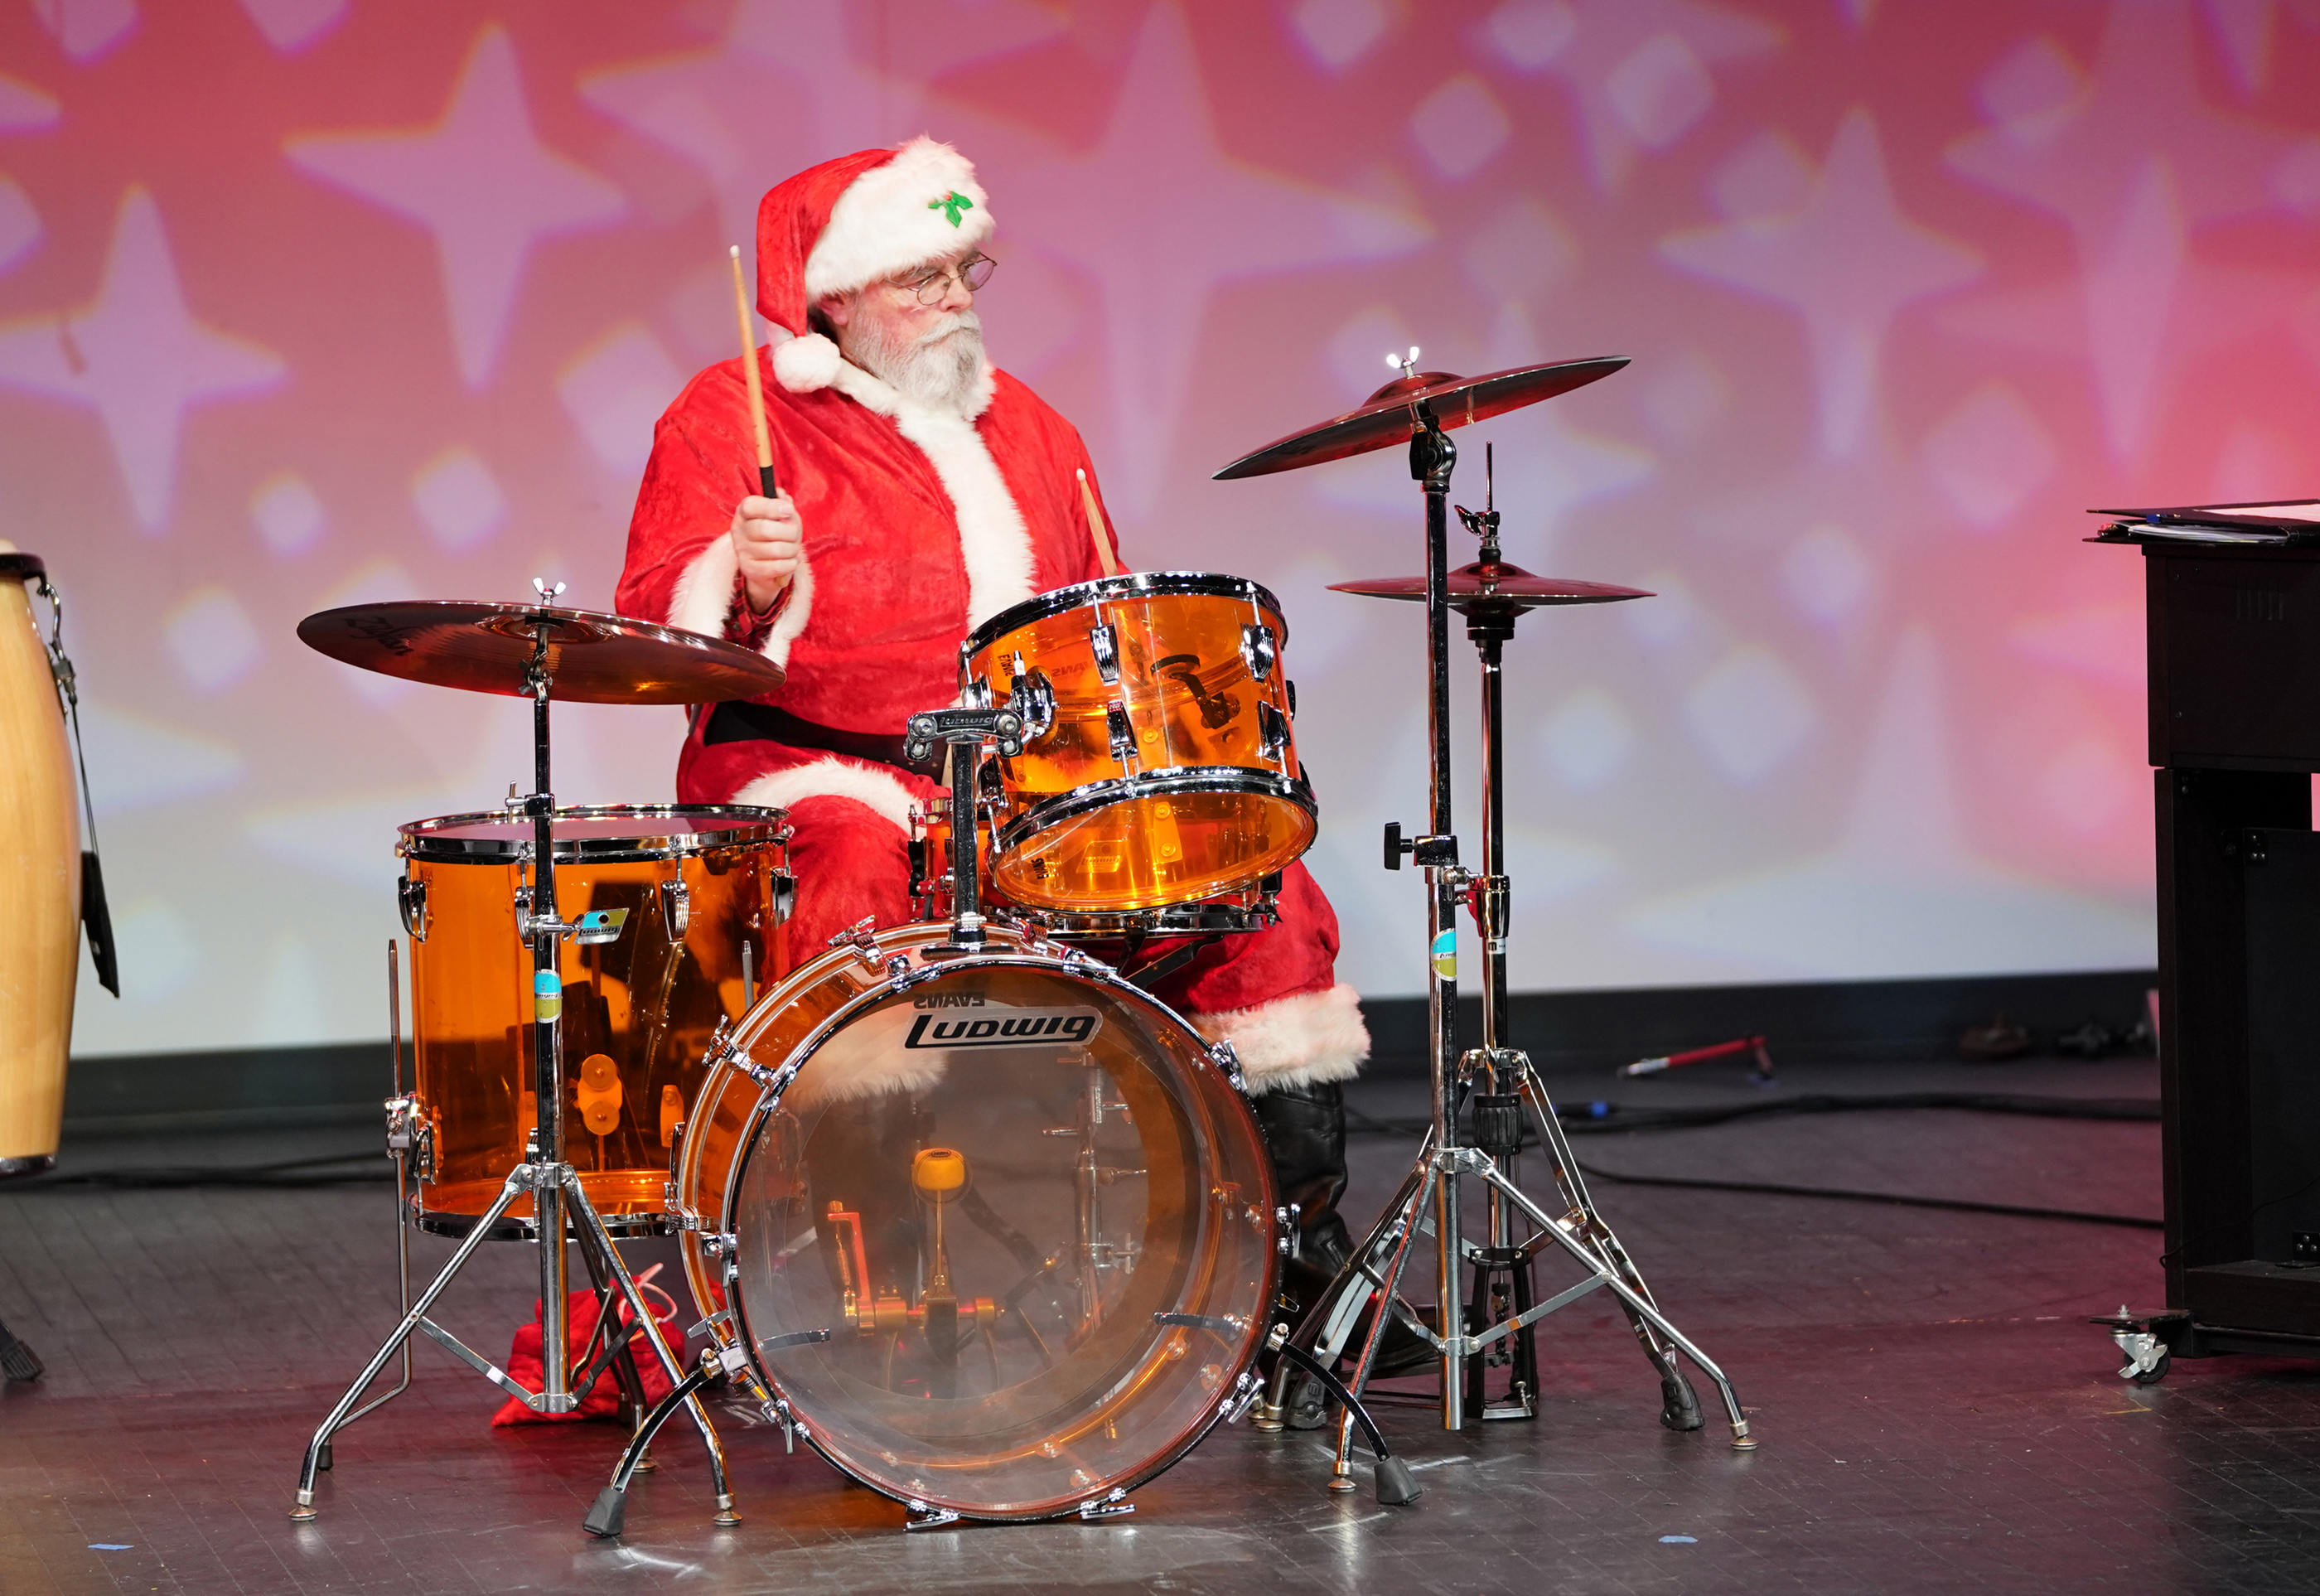 Santa drums